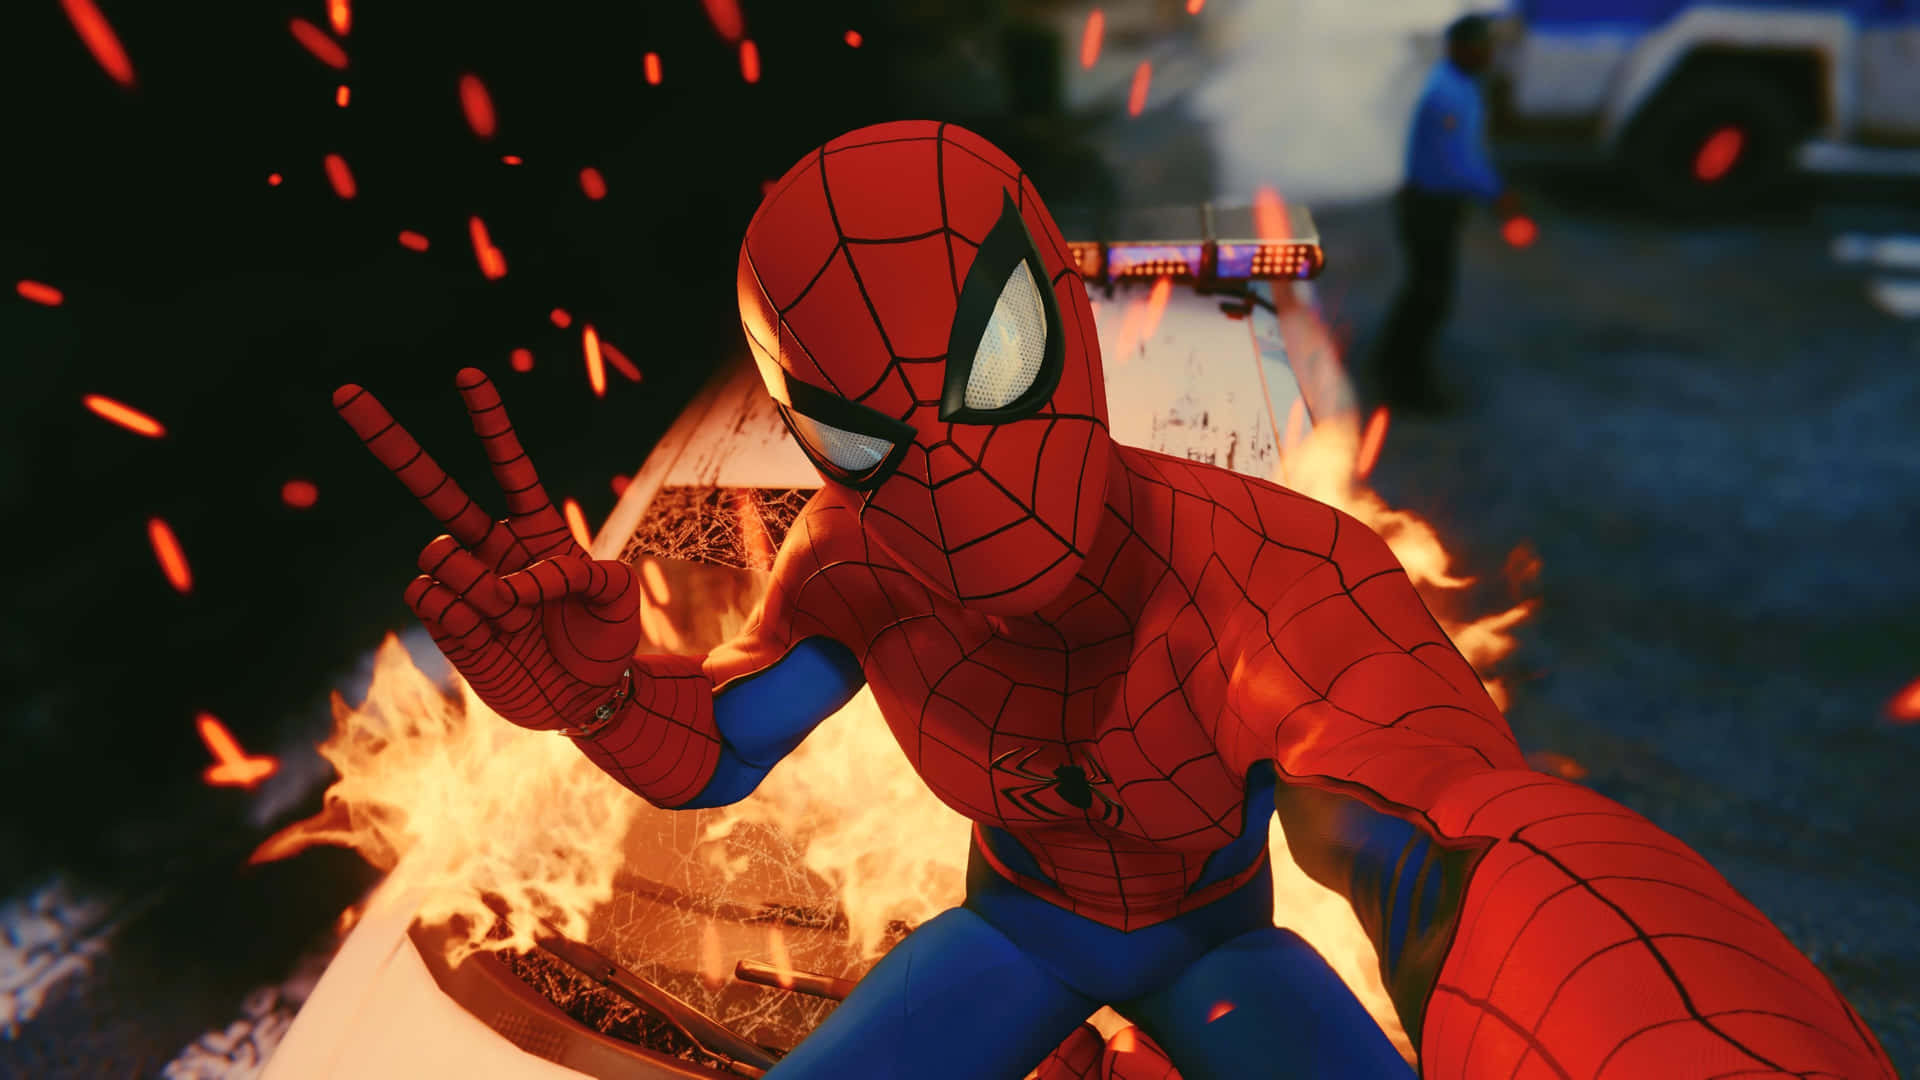 Fondode Pantalla De Spider Man Ps4 En 4k Con La Pose De Paz Y Explosión De Fuego. Fondo de pantalla